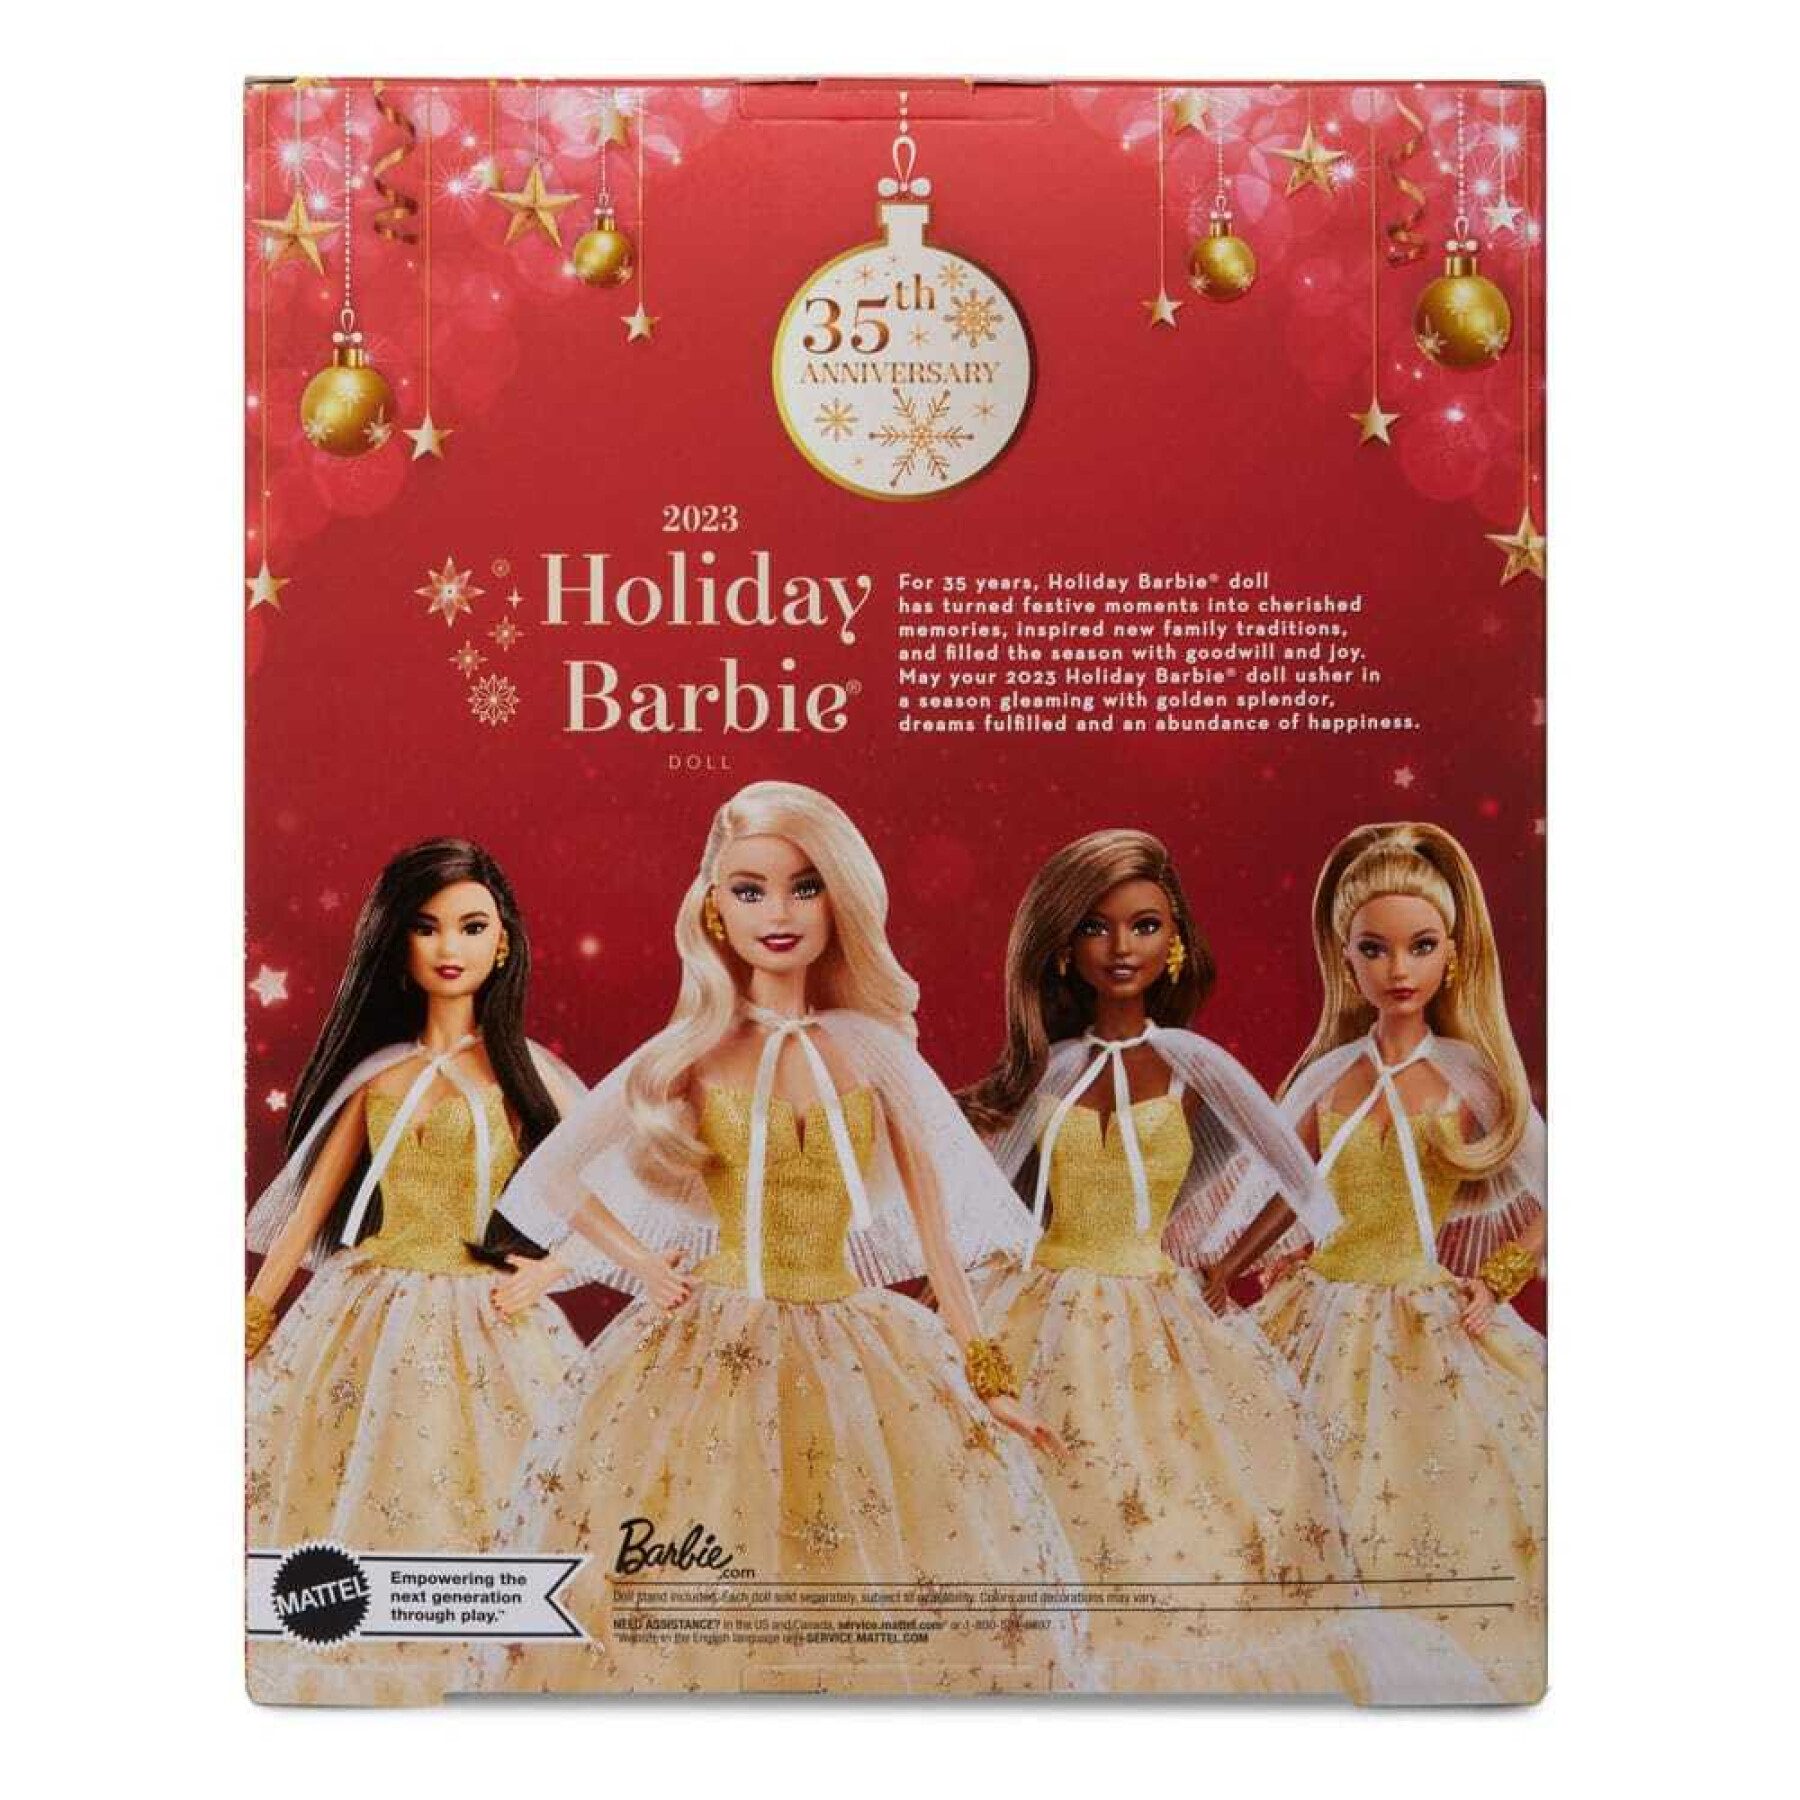 Poupée Signature Mattel Barbie 2023 Holiday Barbie #1